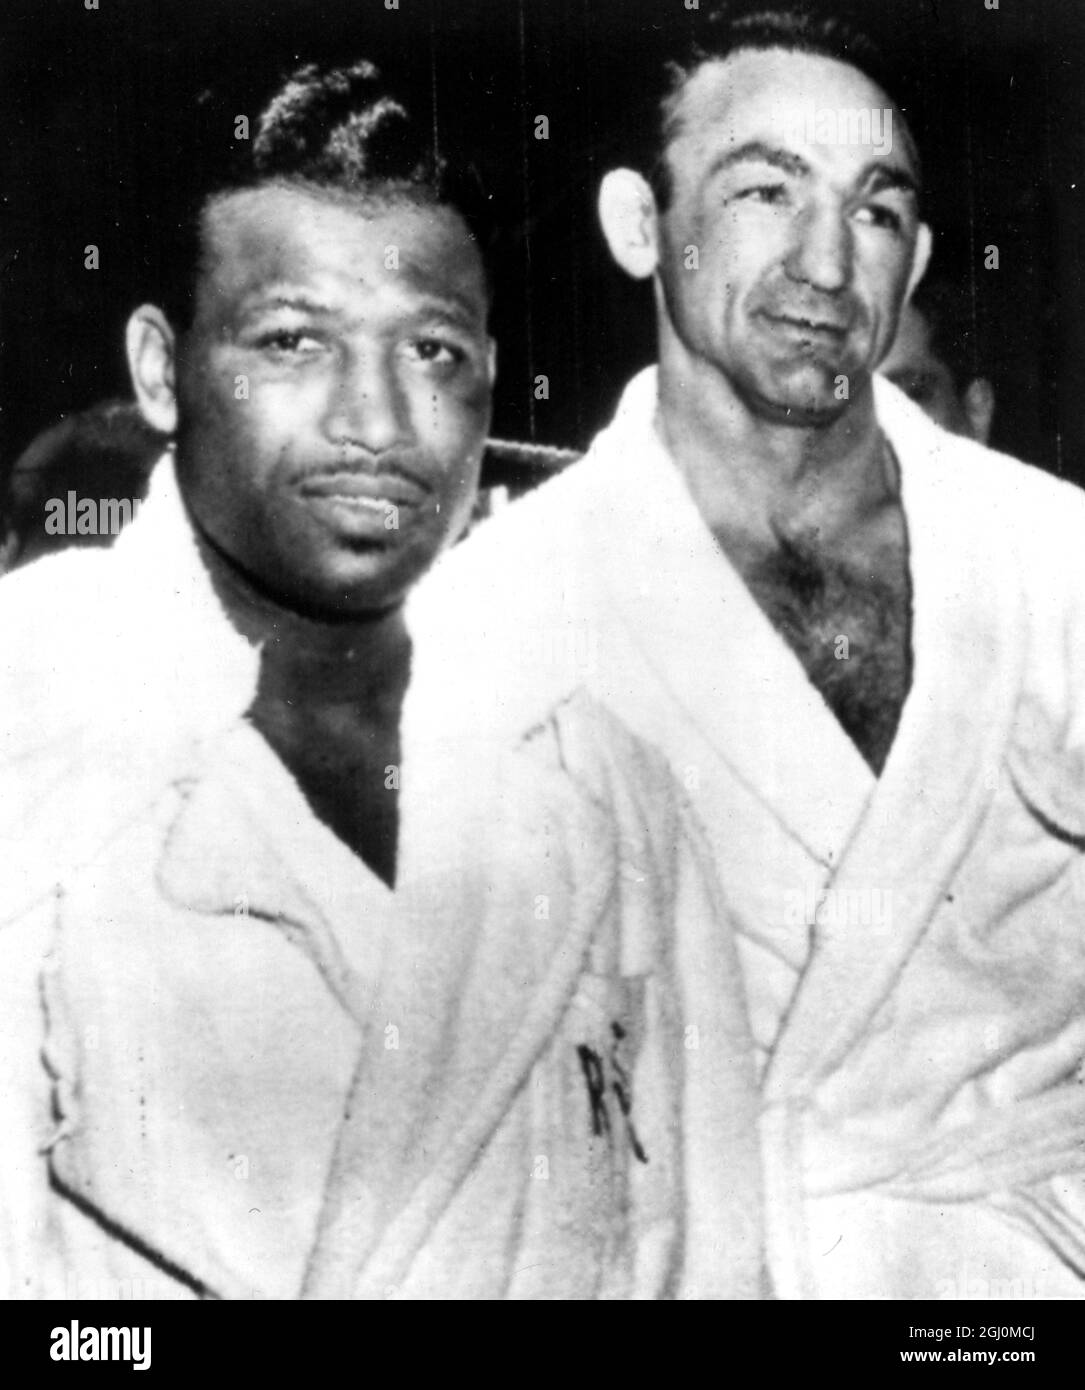 Amerika, Chicago wiegen in Sugar Ray Robinson, der den Titel World Middleweight später an diesem Abend in Chicago zurückgewann, als er Carmen Basilio schlug. 26. März 1958 Stockfoto